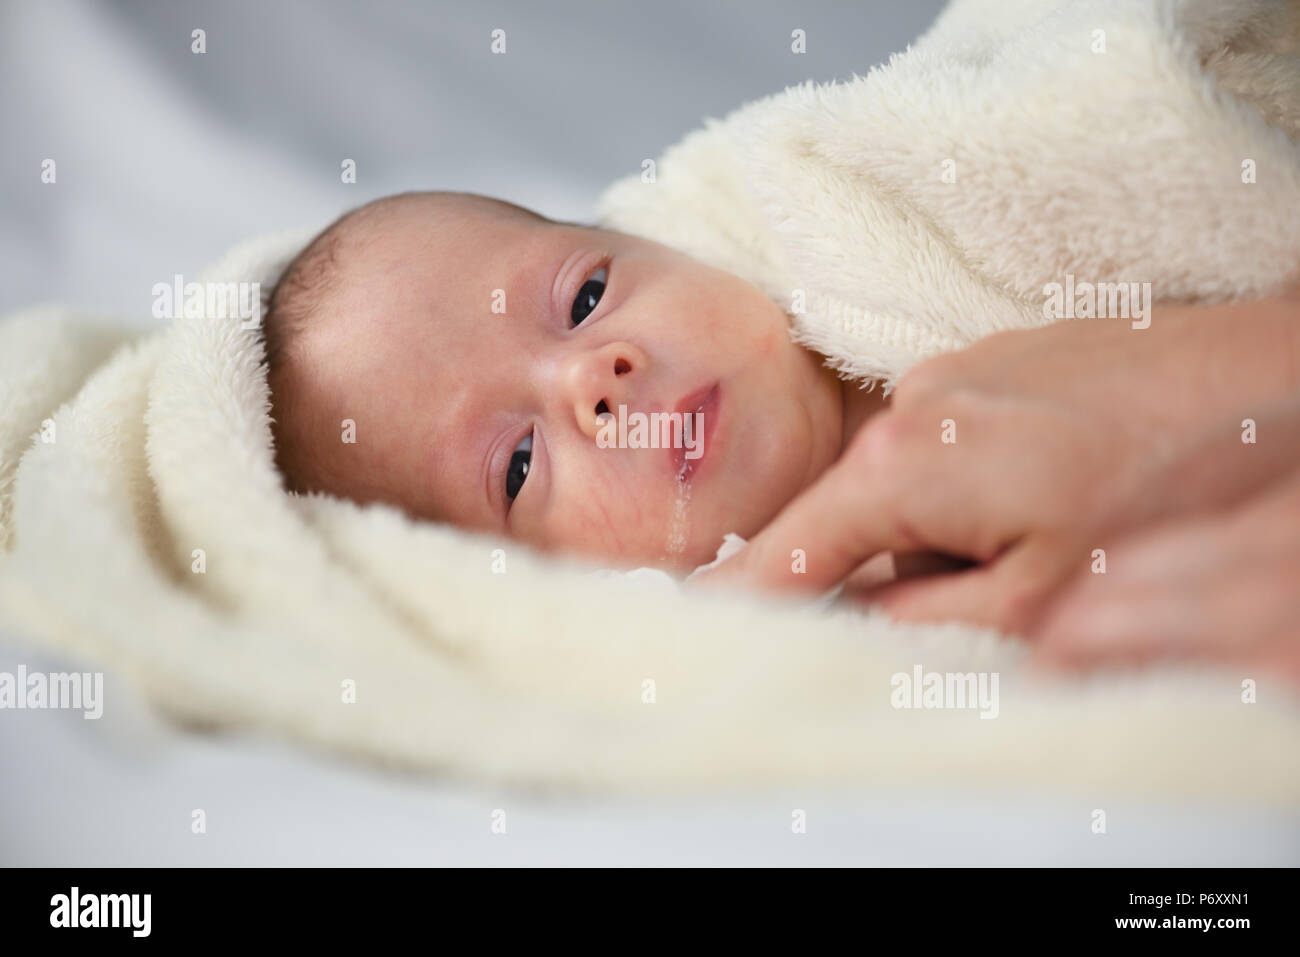 Bébé nouveau-né garçon sur tapis blanc libre Banque D'Images